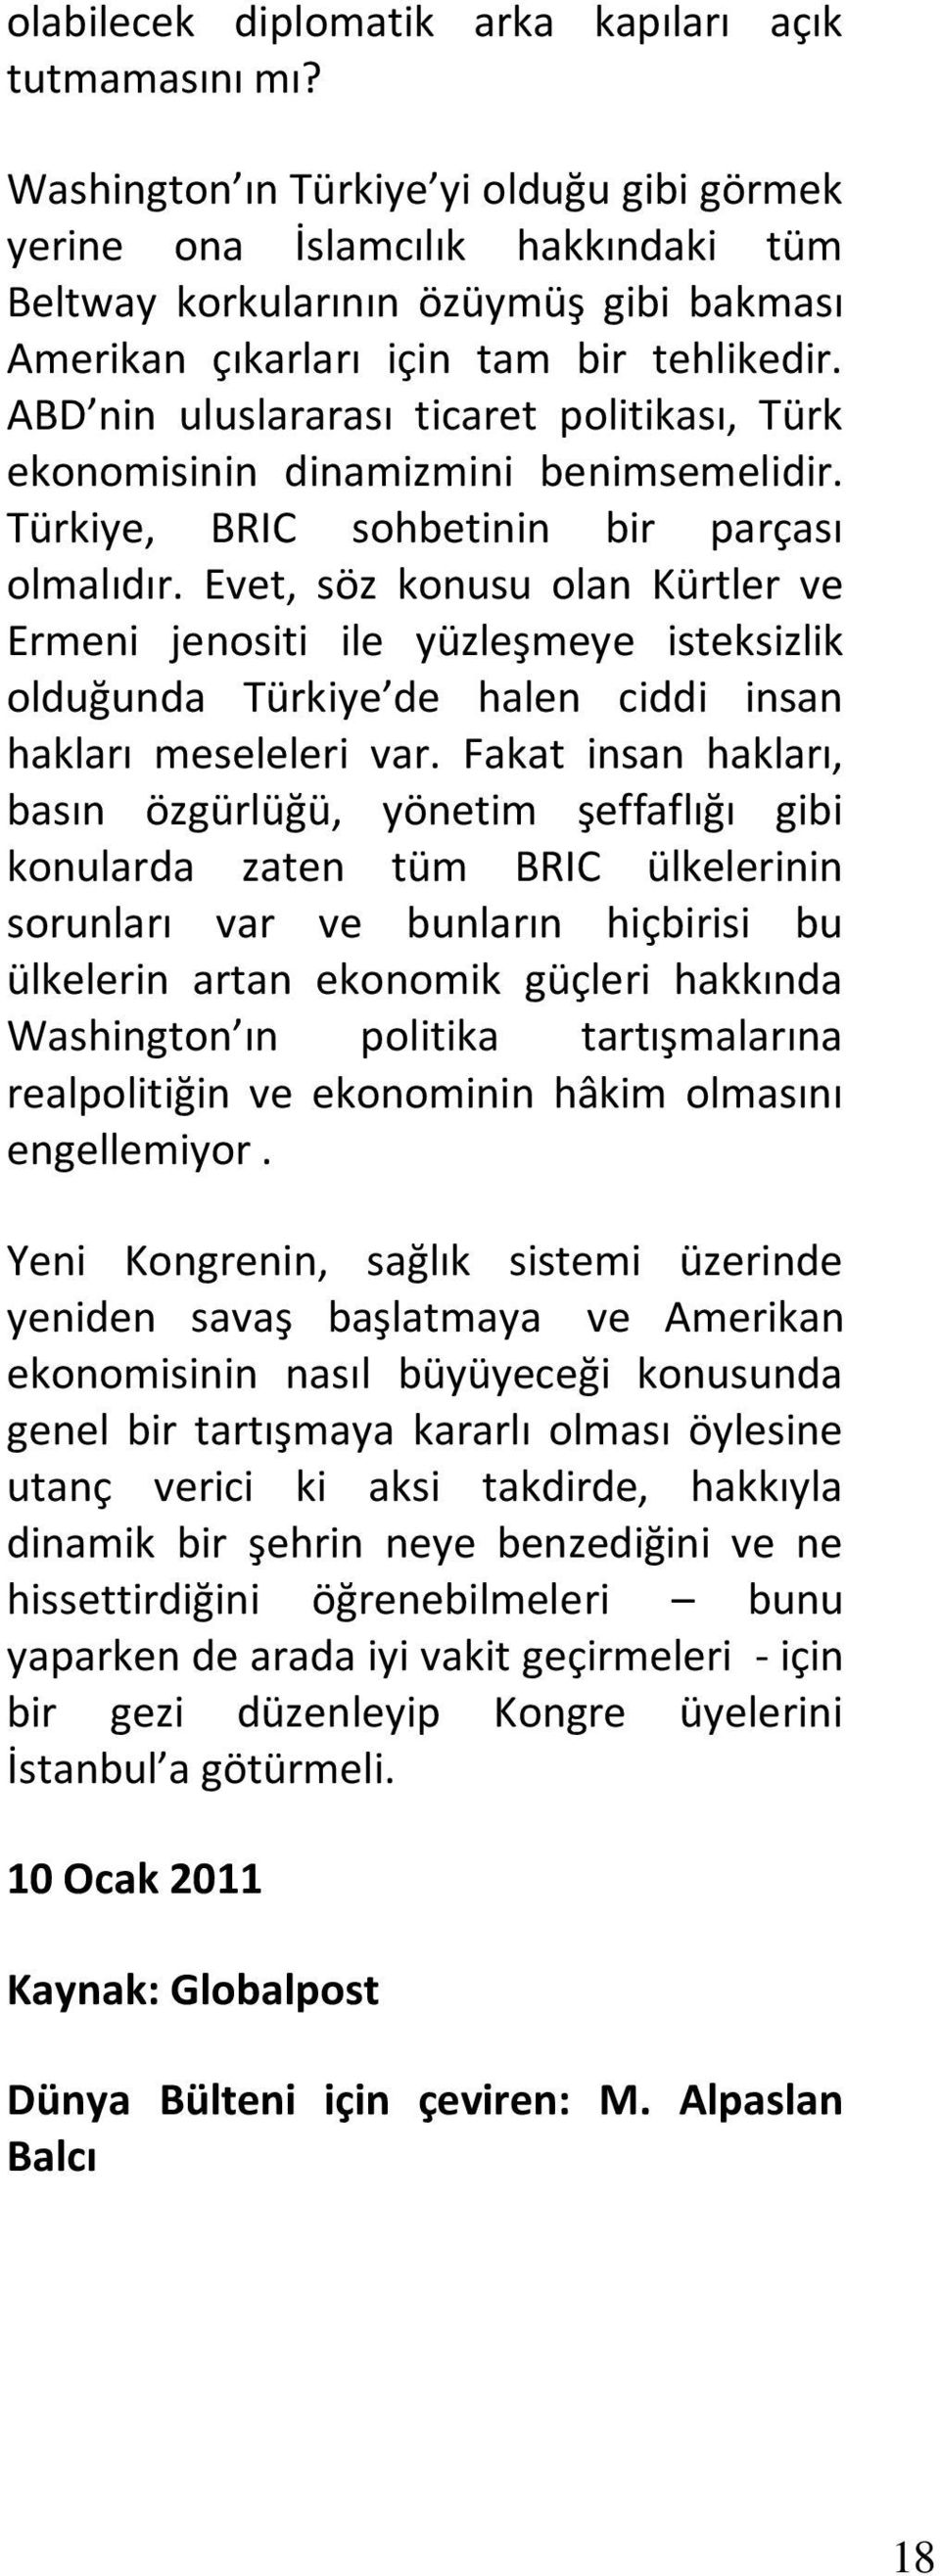 ABD nin uluslararası ticaret politikası, Türk ekonomisinin dinamizmini benimsemelidir. Türkiye, BRIC sohbetinin bir parçası olmalıdır.